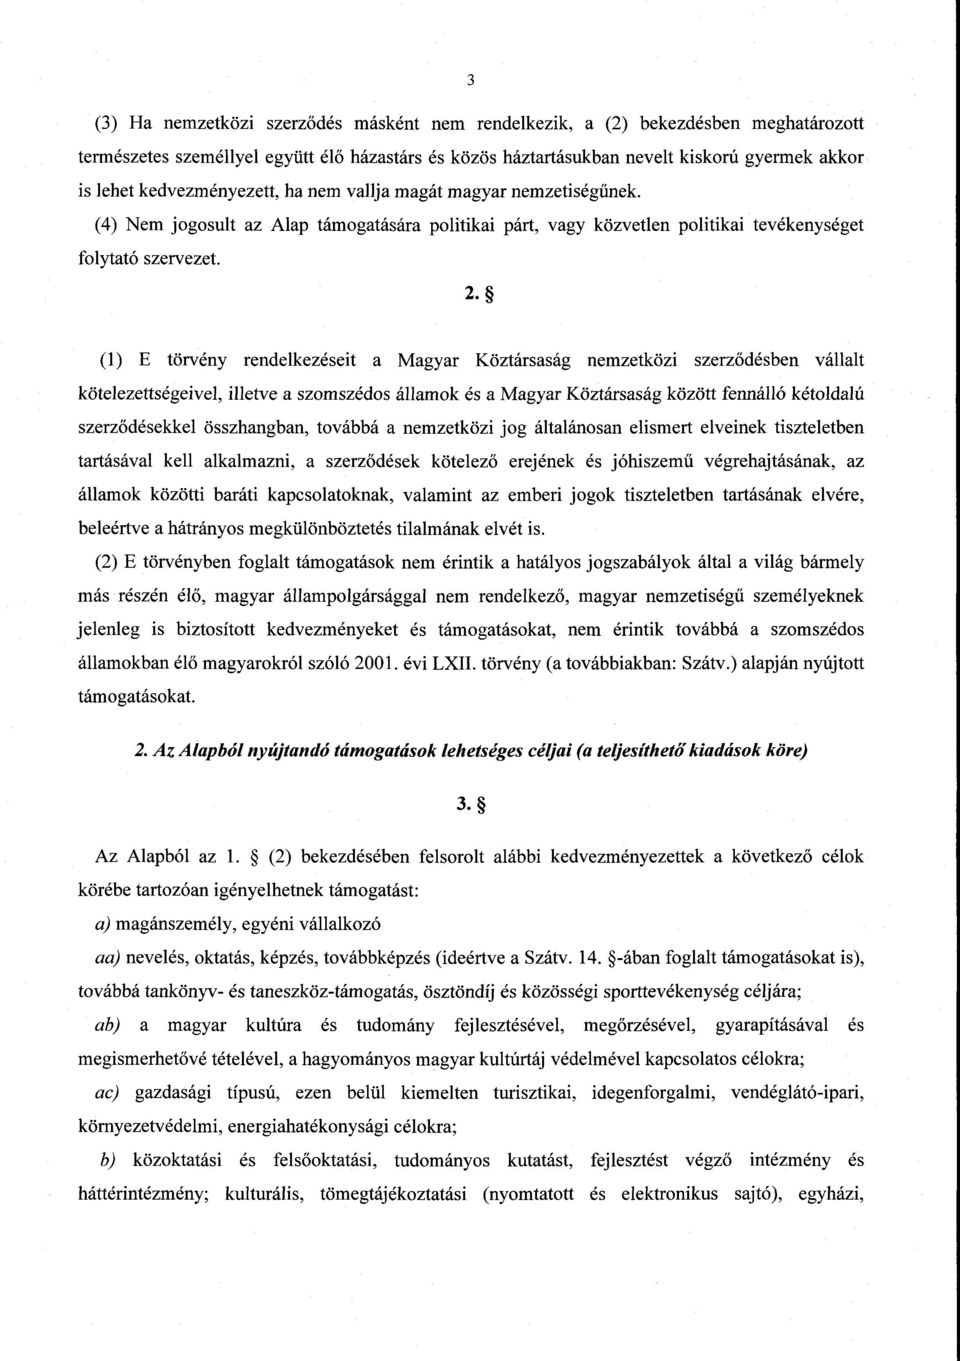 (1) E törvény rendelkezéseit a Magyar Köztársaság nemzetközi szerz ődésben vállalt kötelezettségeivel, illetve a szomszédos államok és a Magyar Köztársaság között fennálló kétoldalú szerződésekkel